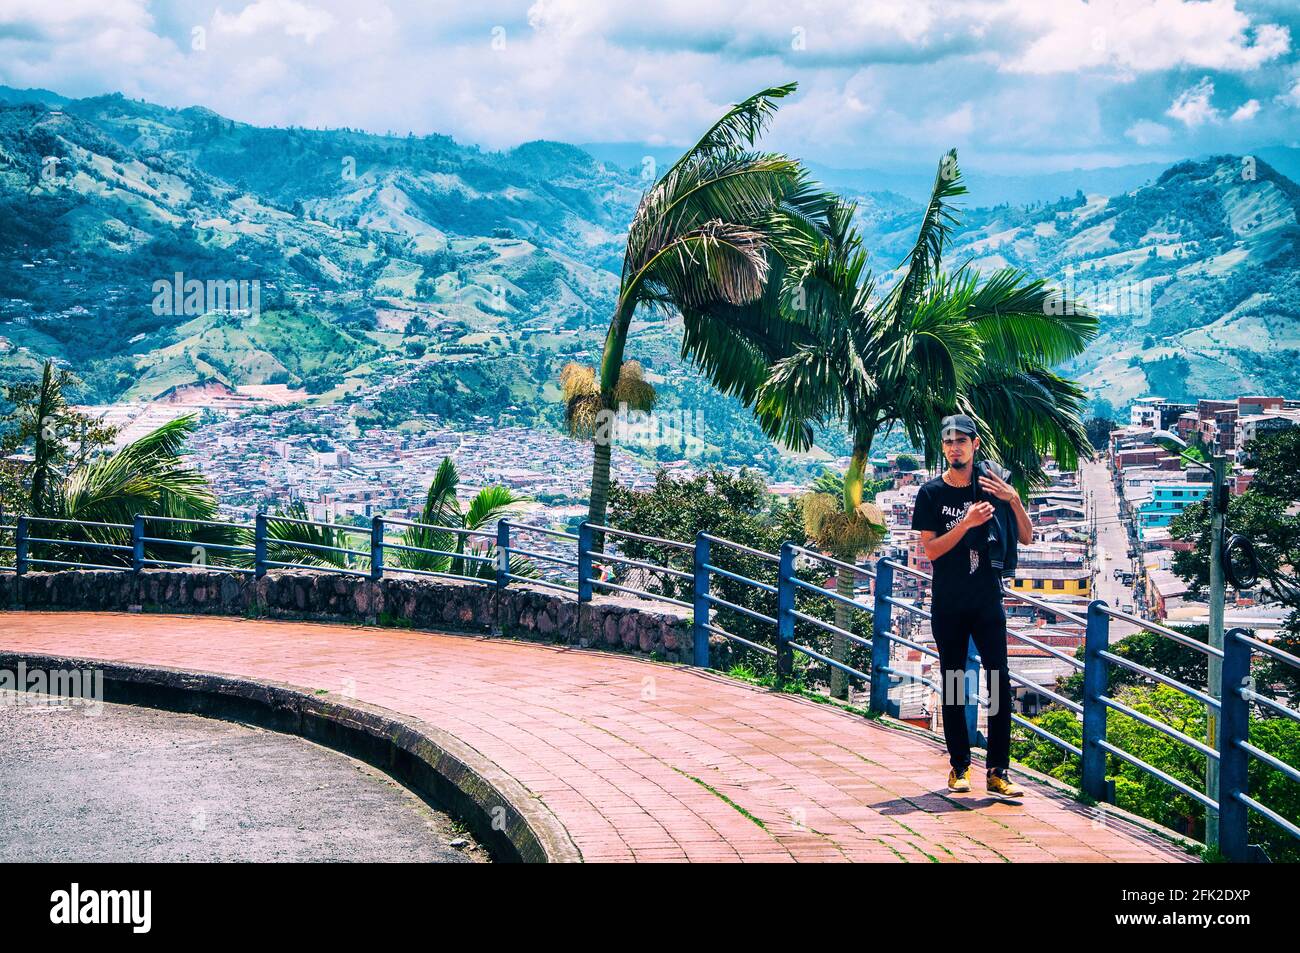 Homme marchant et montagnes en arrière-plan. Manizales, Caldas, Colombie. Banque D'Images